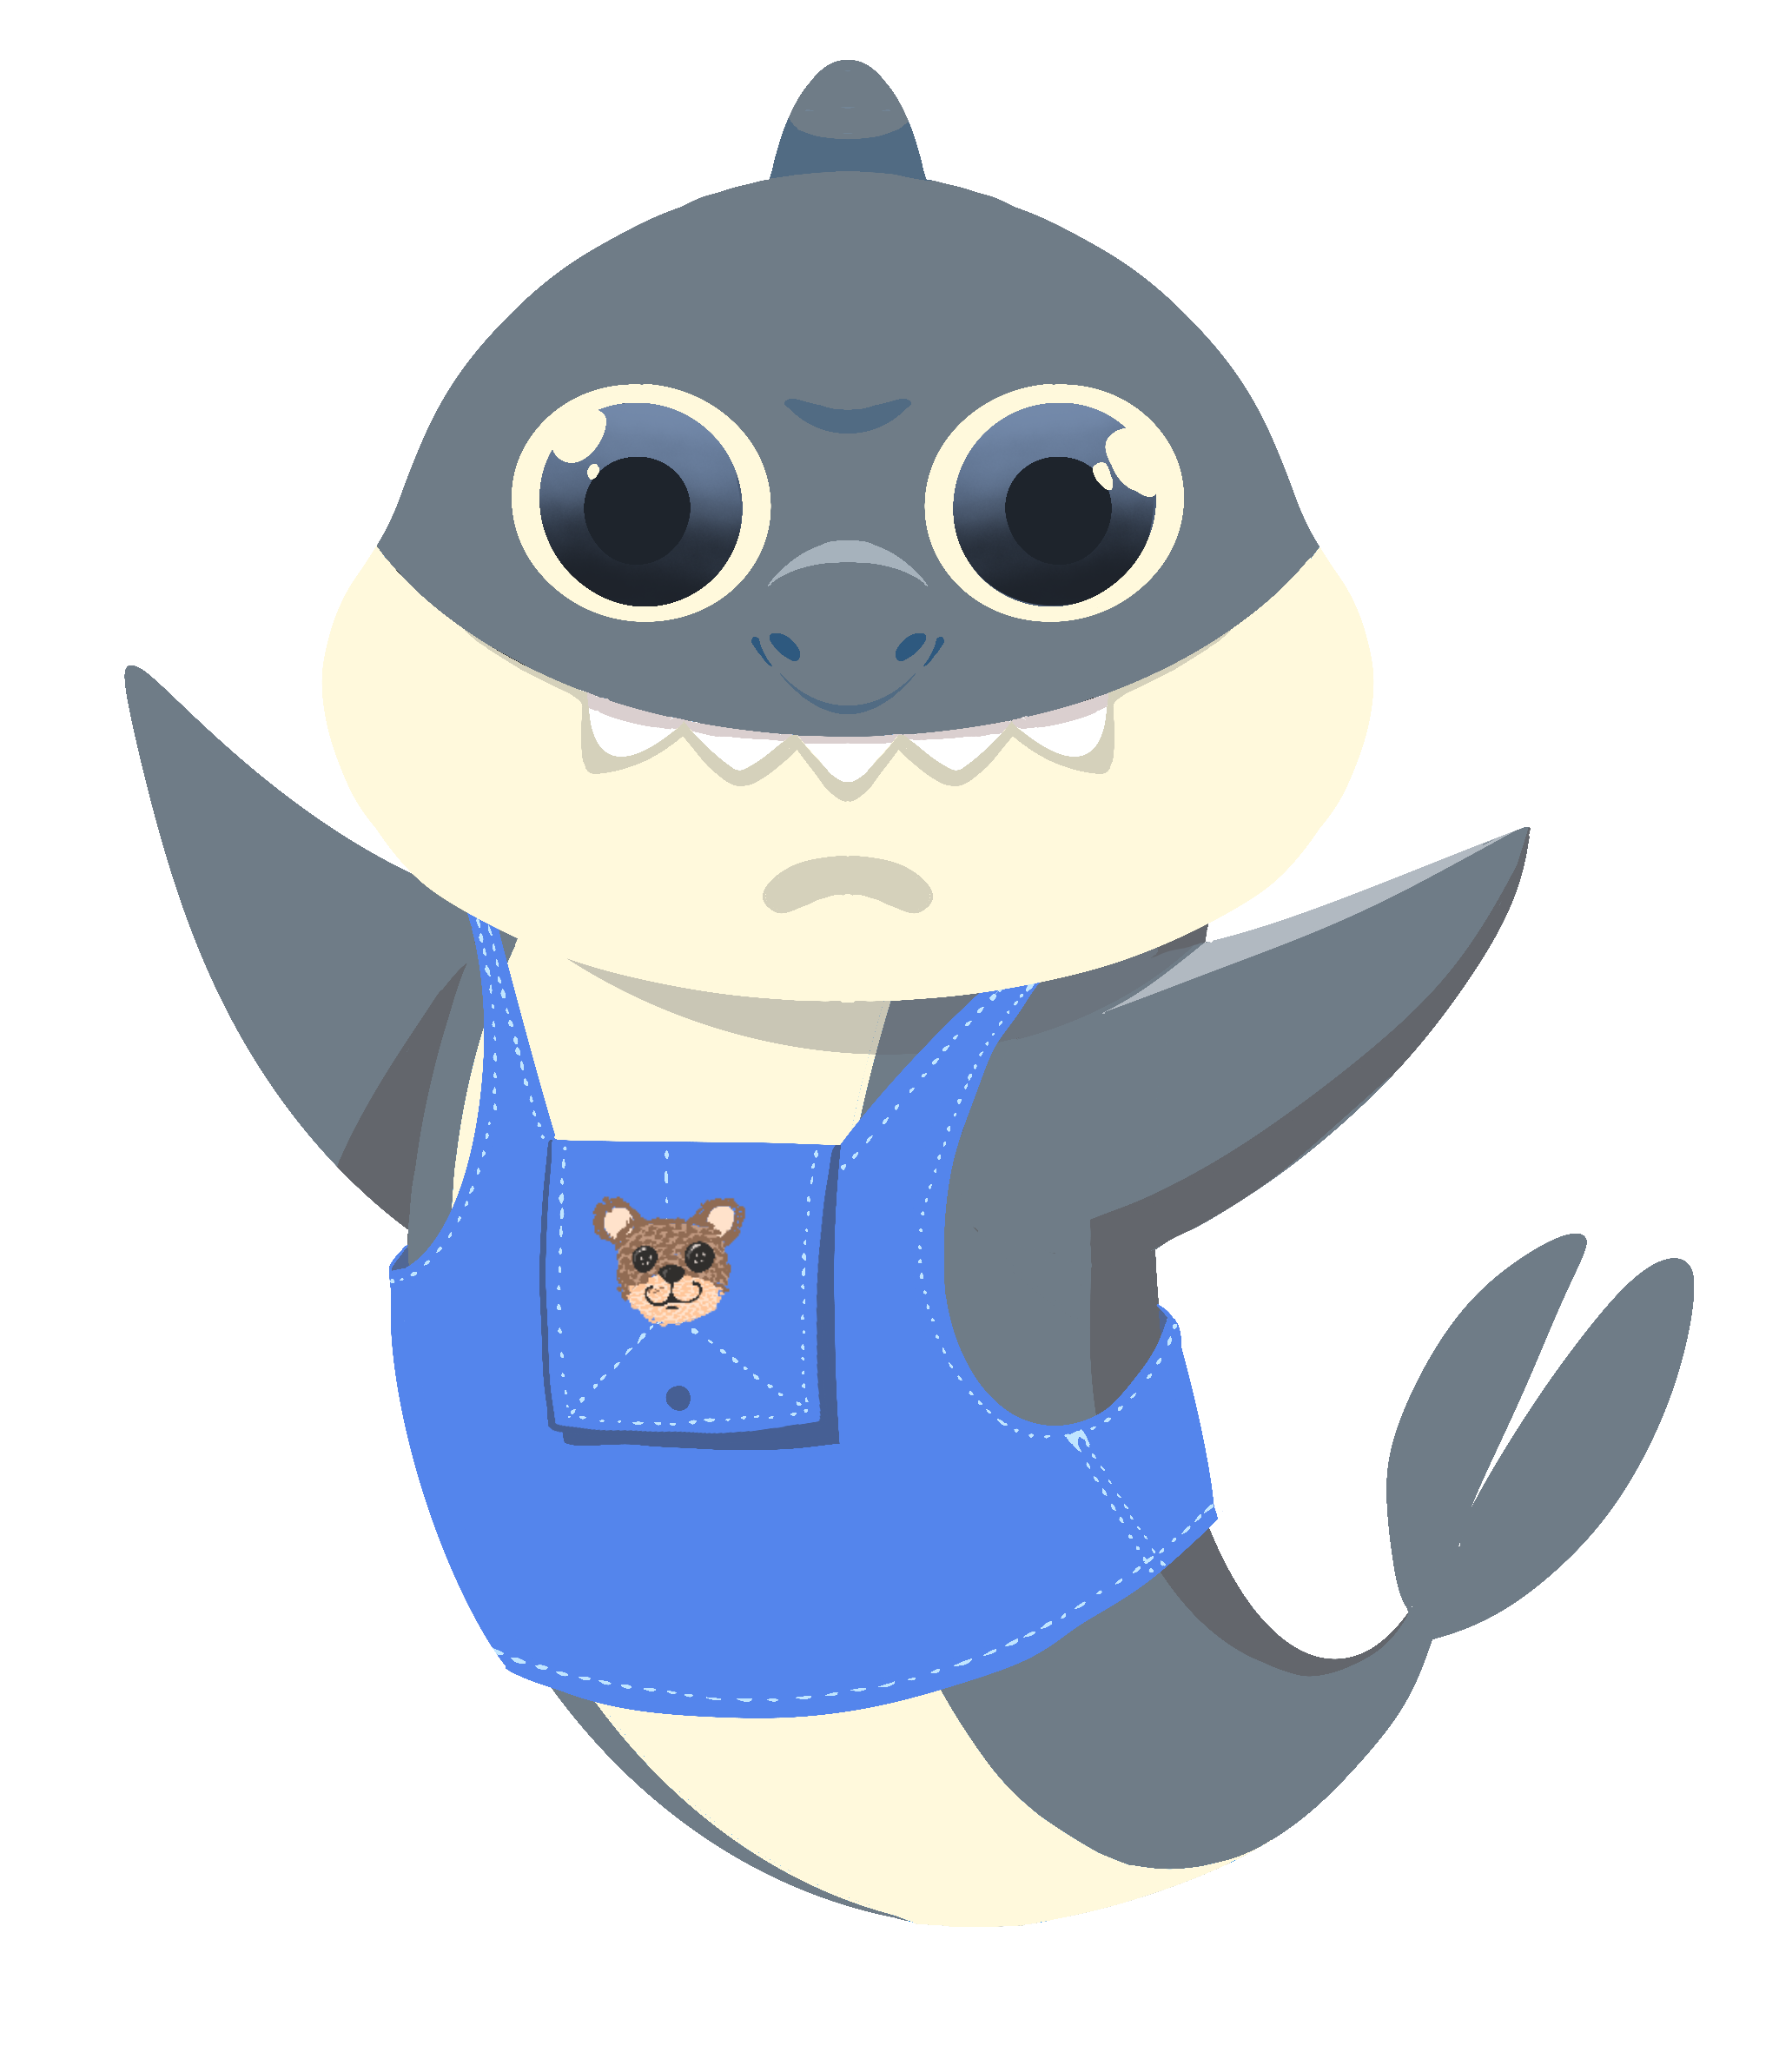 Sharky te acompañará a navegar en las unidades del Entorno.